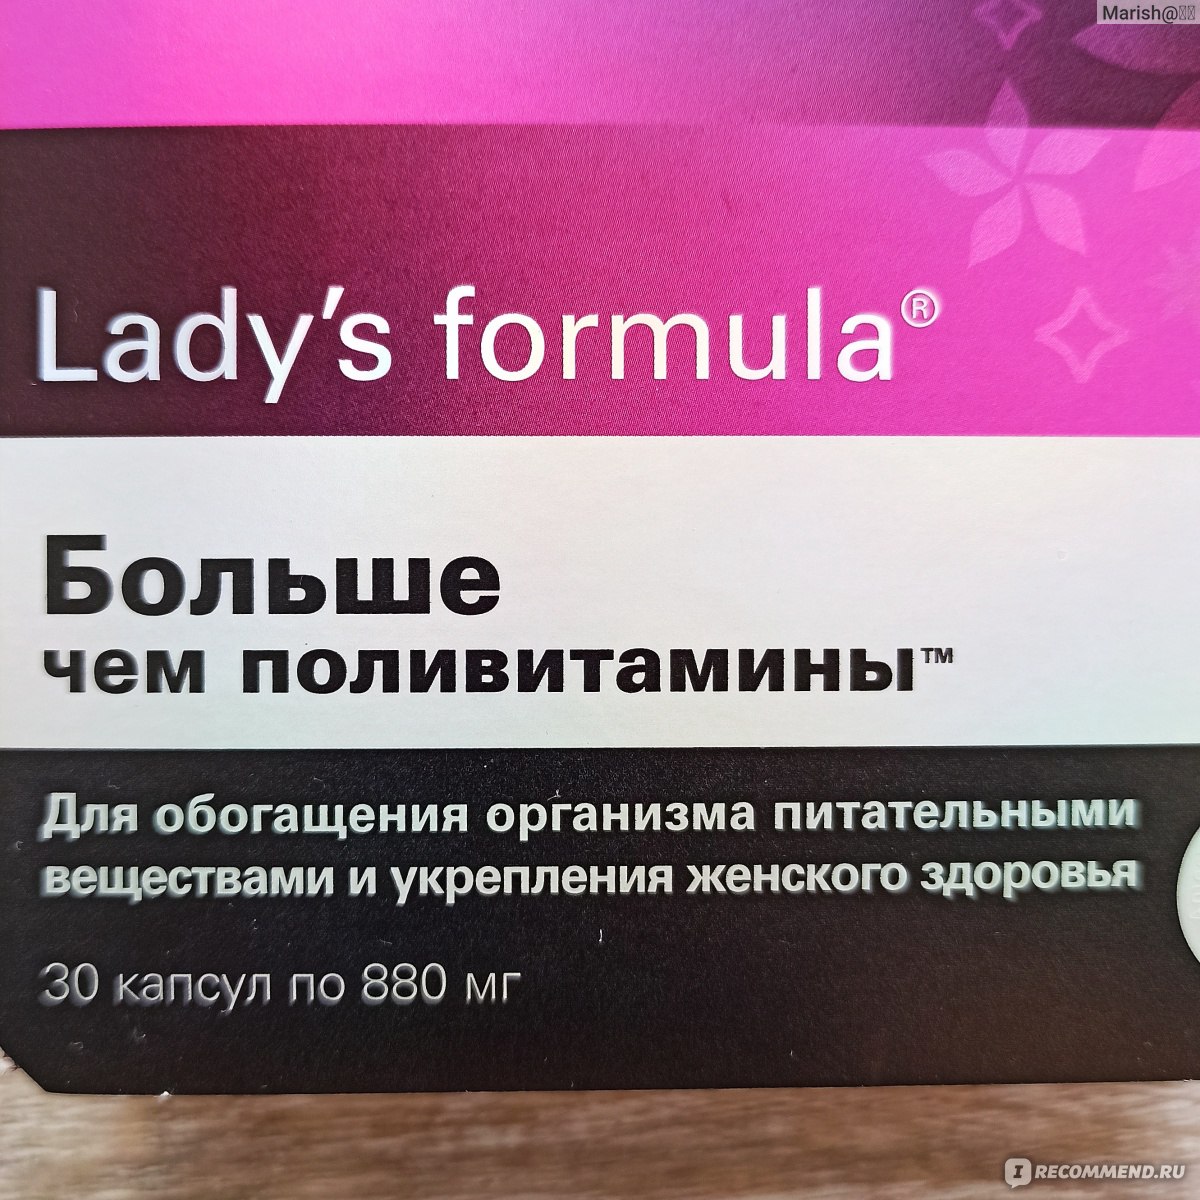 Lady formula больше чем поливитамины отзывы. Леди-с формула больше чем поливитамины. Lady's Formula больше чем поливитамины. Леди-с формула больше чем поливитамины отзывы. Мужская формула больше чем поливитамины отзывы.